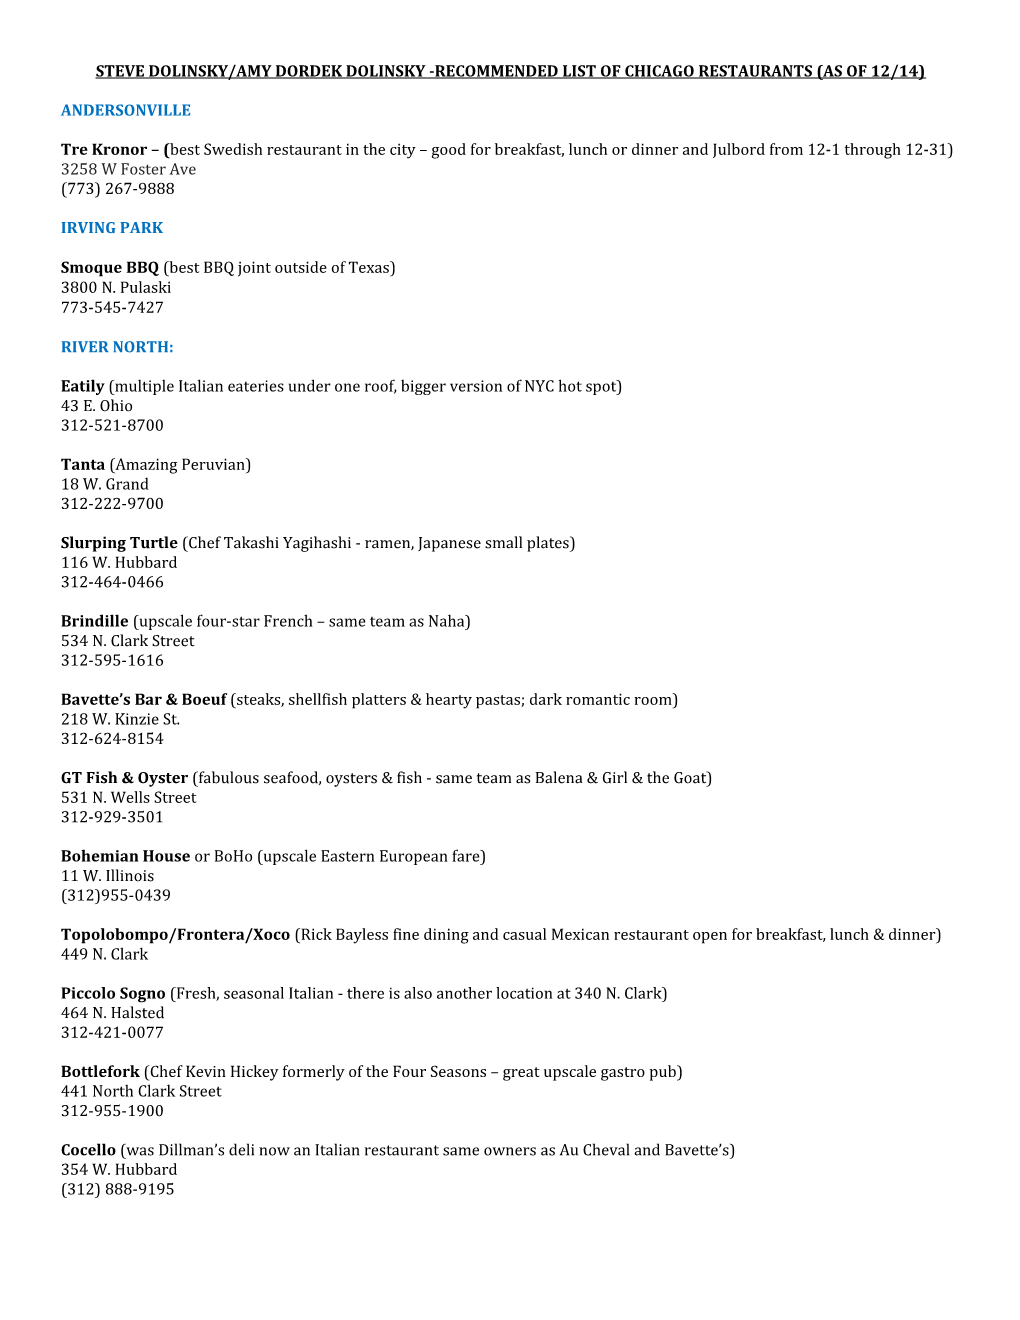 Steve Dolinsky/Amy Dordek Dolinsky-Recommended List of Chicago Restaurants (As of 12/14)